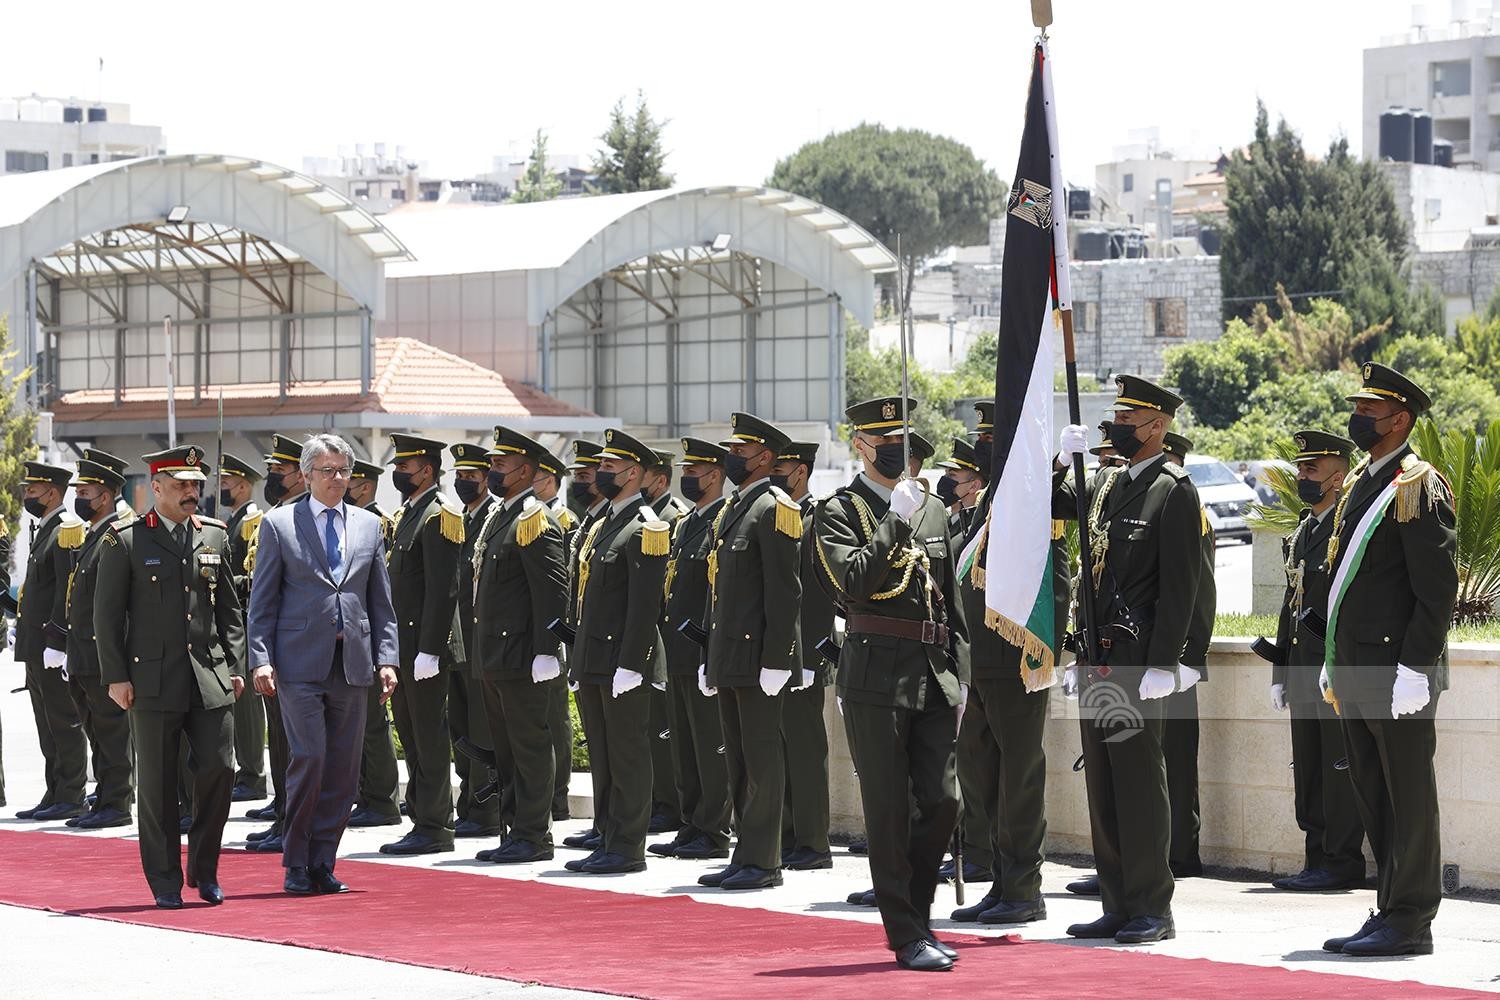 مراسم استقبال رئيس مكتب تمثيل جمهورية البرتغال لدى دولة فلسطين السفير فريدريكو سيرفيرا باياودو ناسيمينتو.jpg